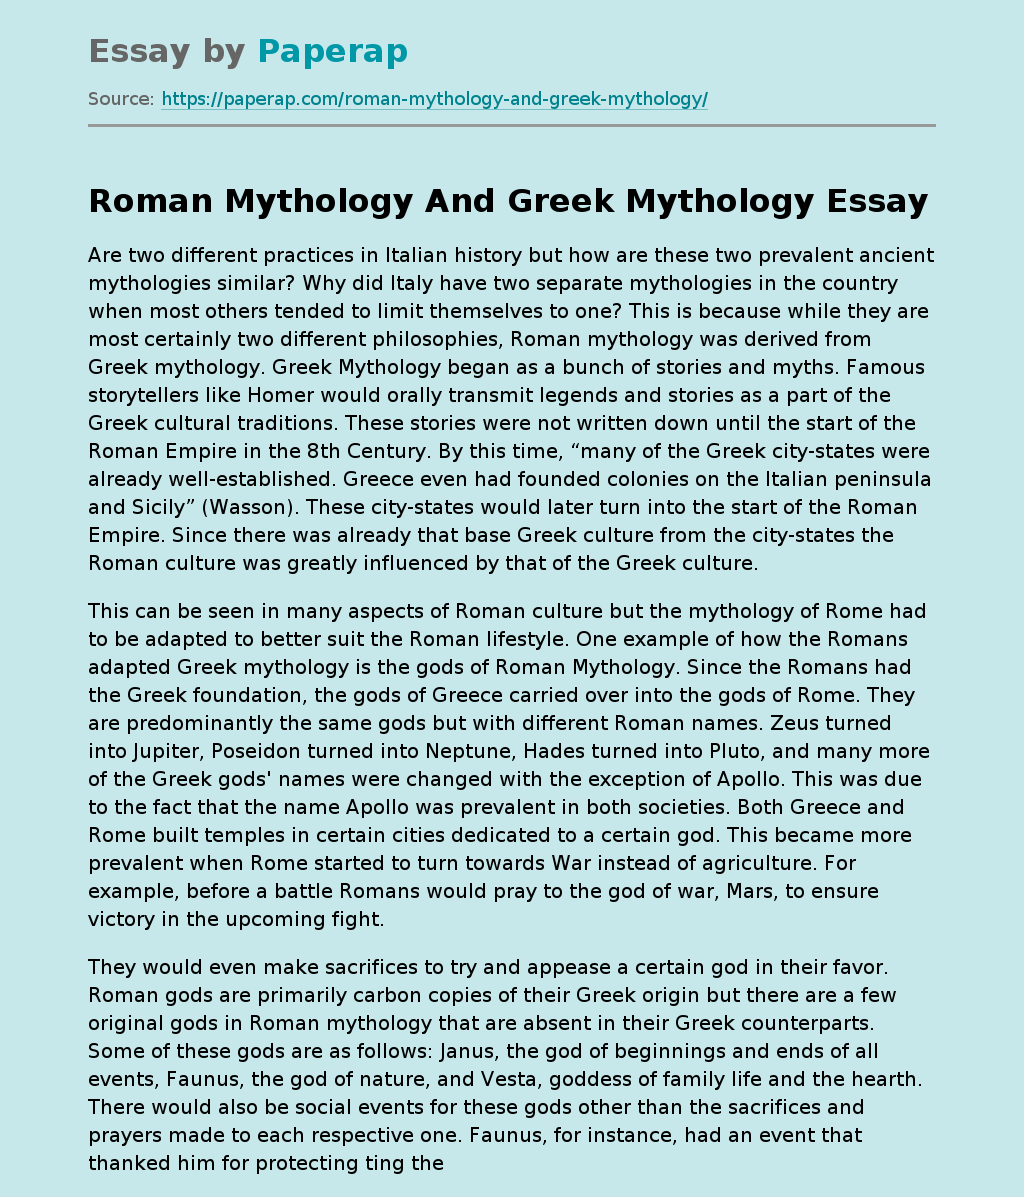 Roman Mythology And Greek Mythology